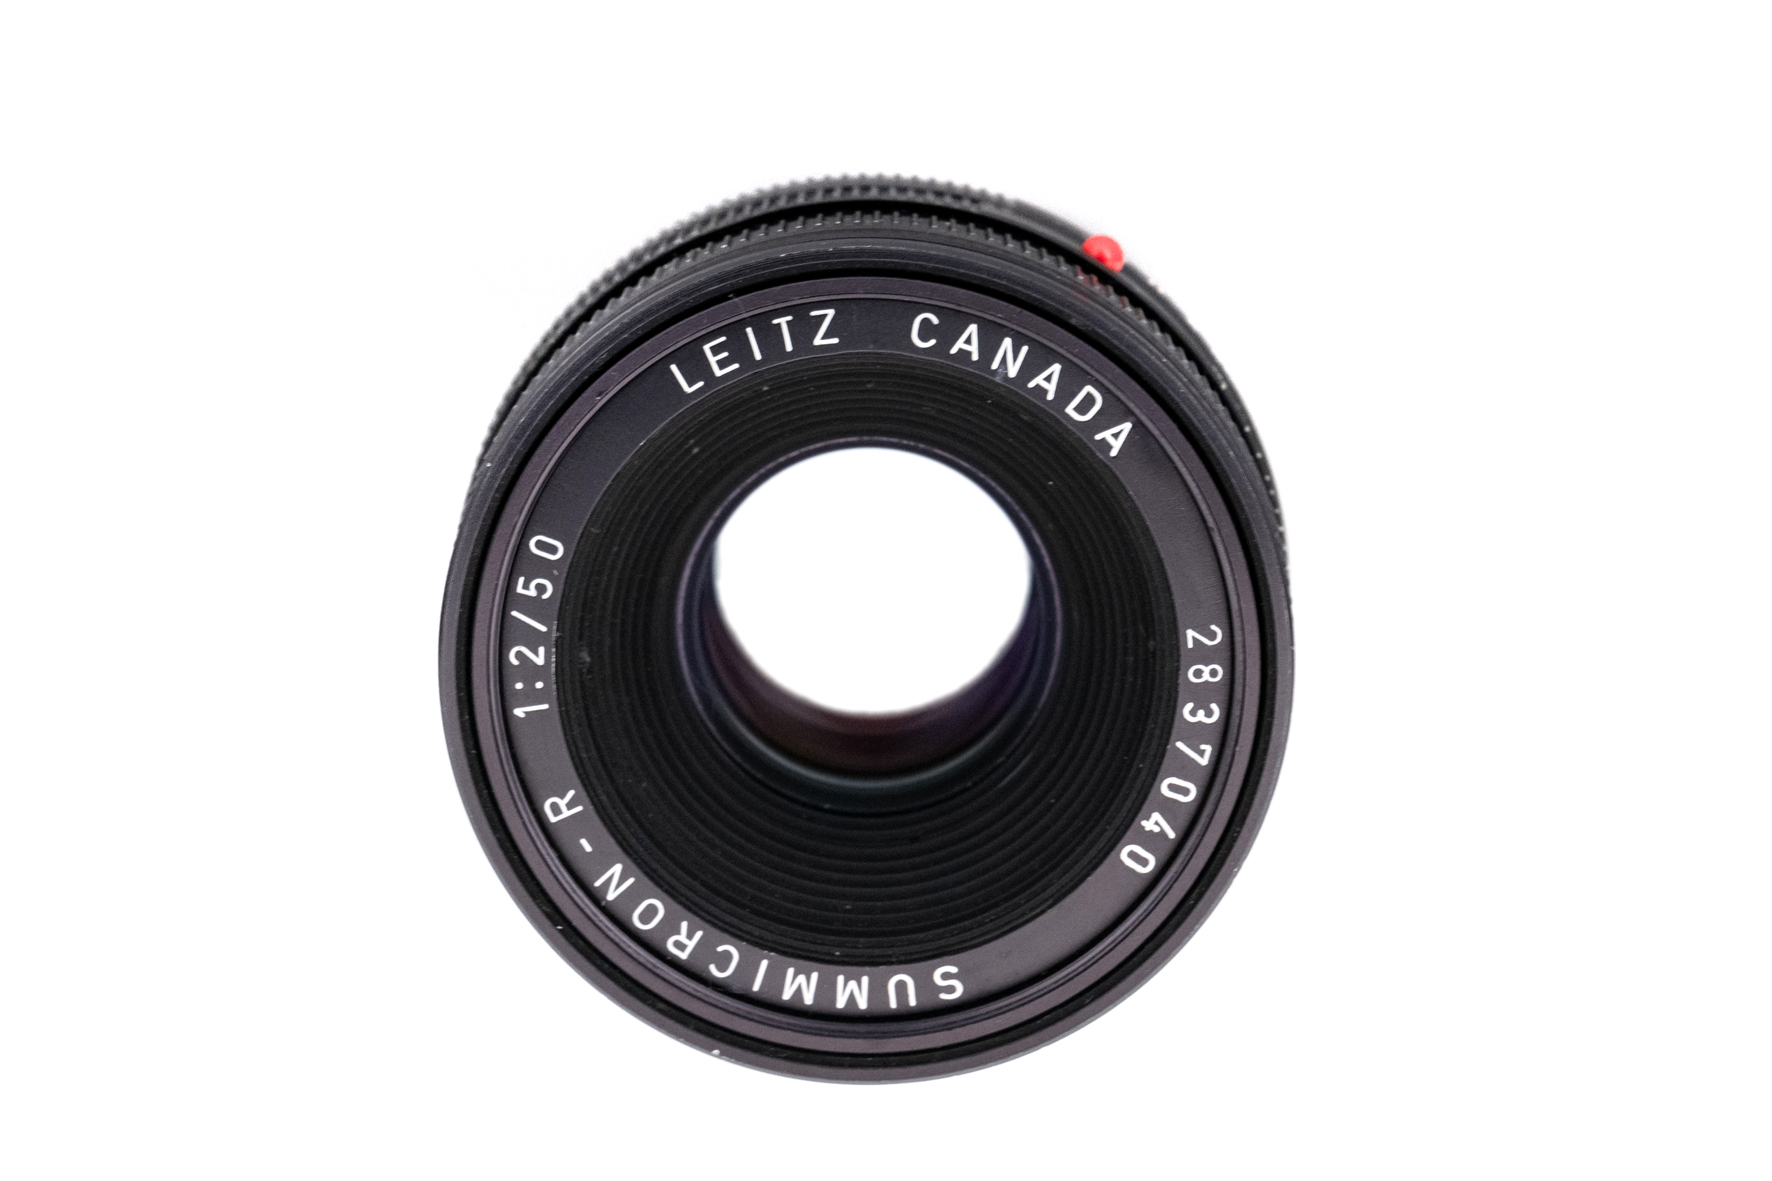 Leitz Canada Summicron-R 1:2,0/50mm 